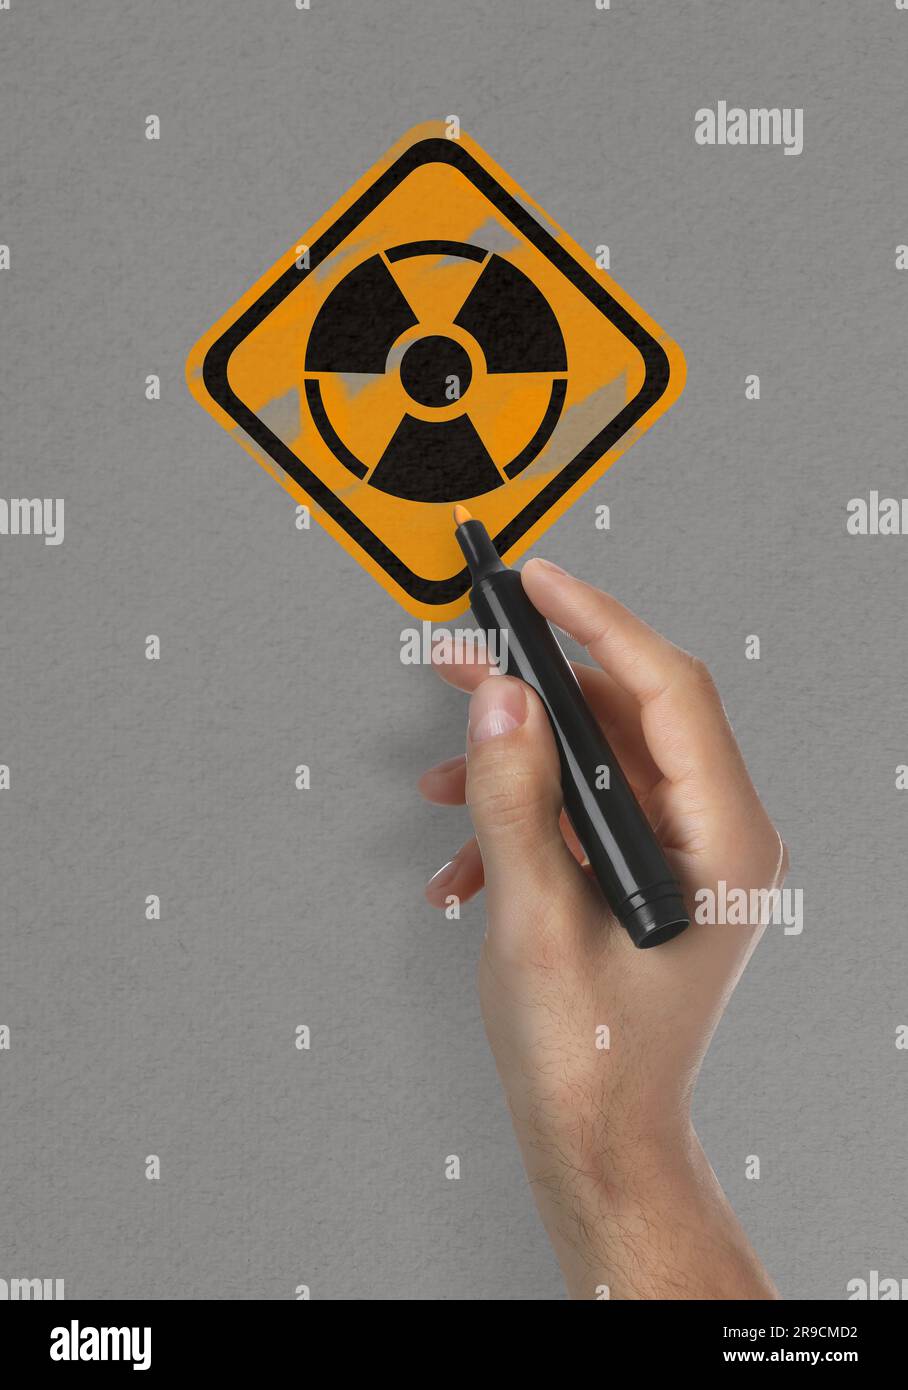 Man malt Strahlungswarnsymbol mit Markierung auf hellgrauer Oberfläche, Nahaufnahme Stockfoto